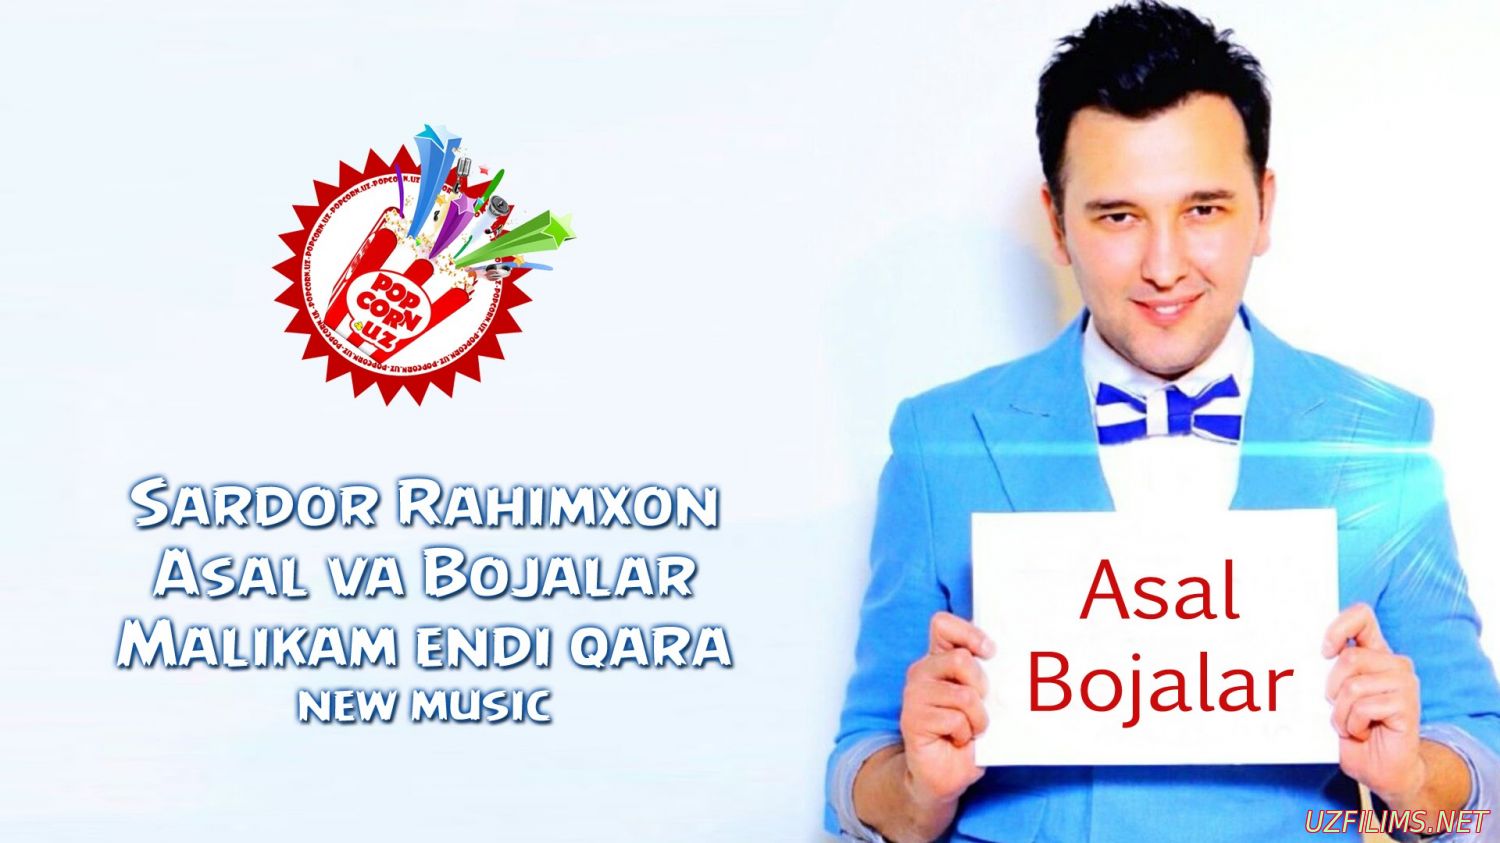 Sardor Rahimxon & Asal & Bojalar - Malikam endi qara (new music)